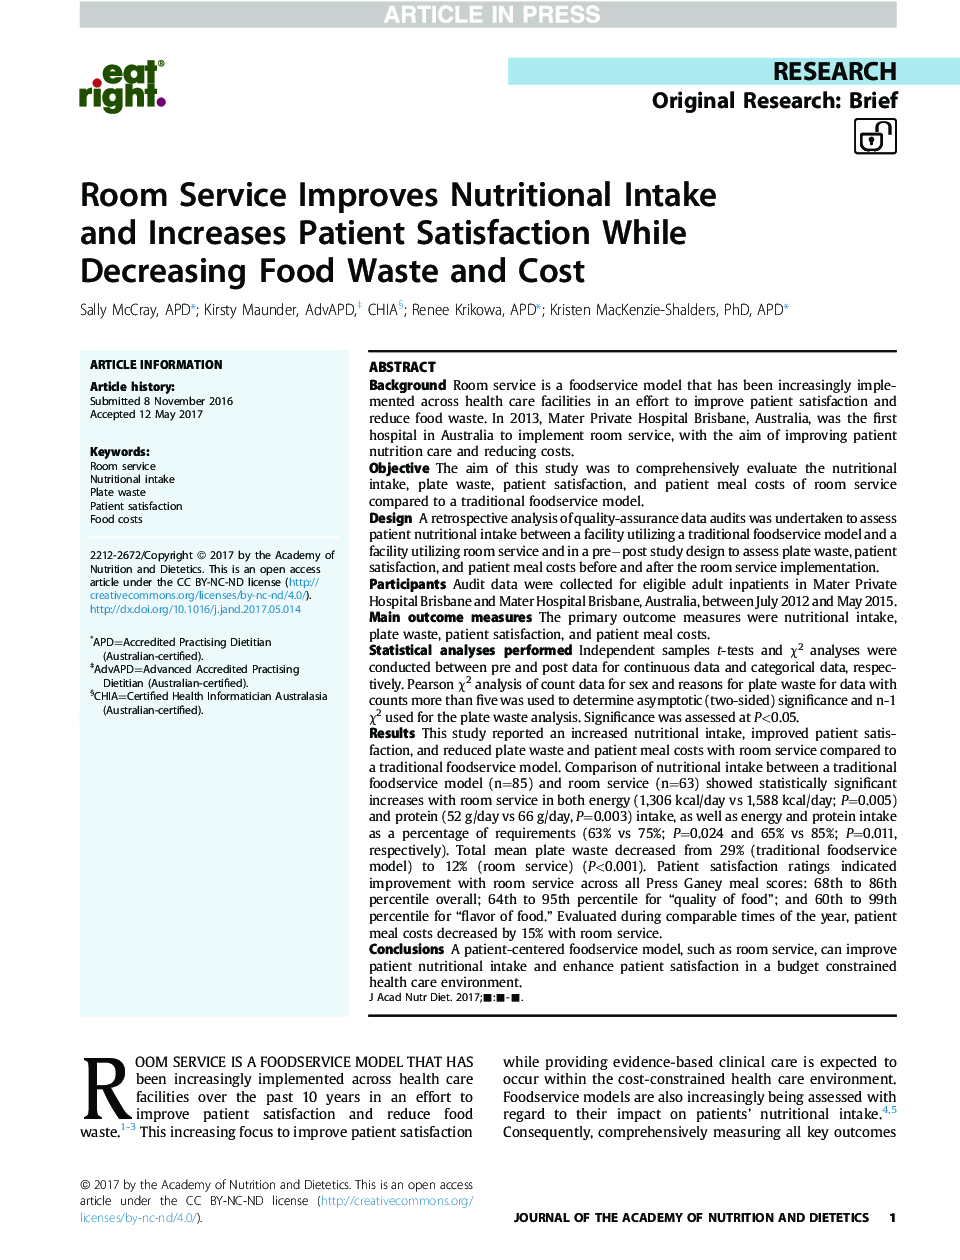 خدمات در اتاق باعث افزایش میزان مصرف غذا و افزایش رضایتمندی بیمار می شود، در حالی که کاهش هزینه و هزینه های غذا را افزایش می دهد 